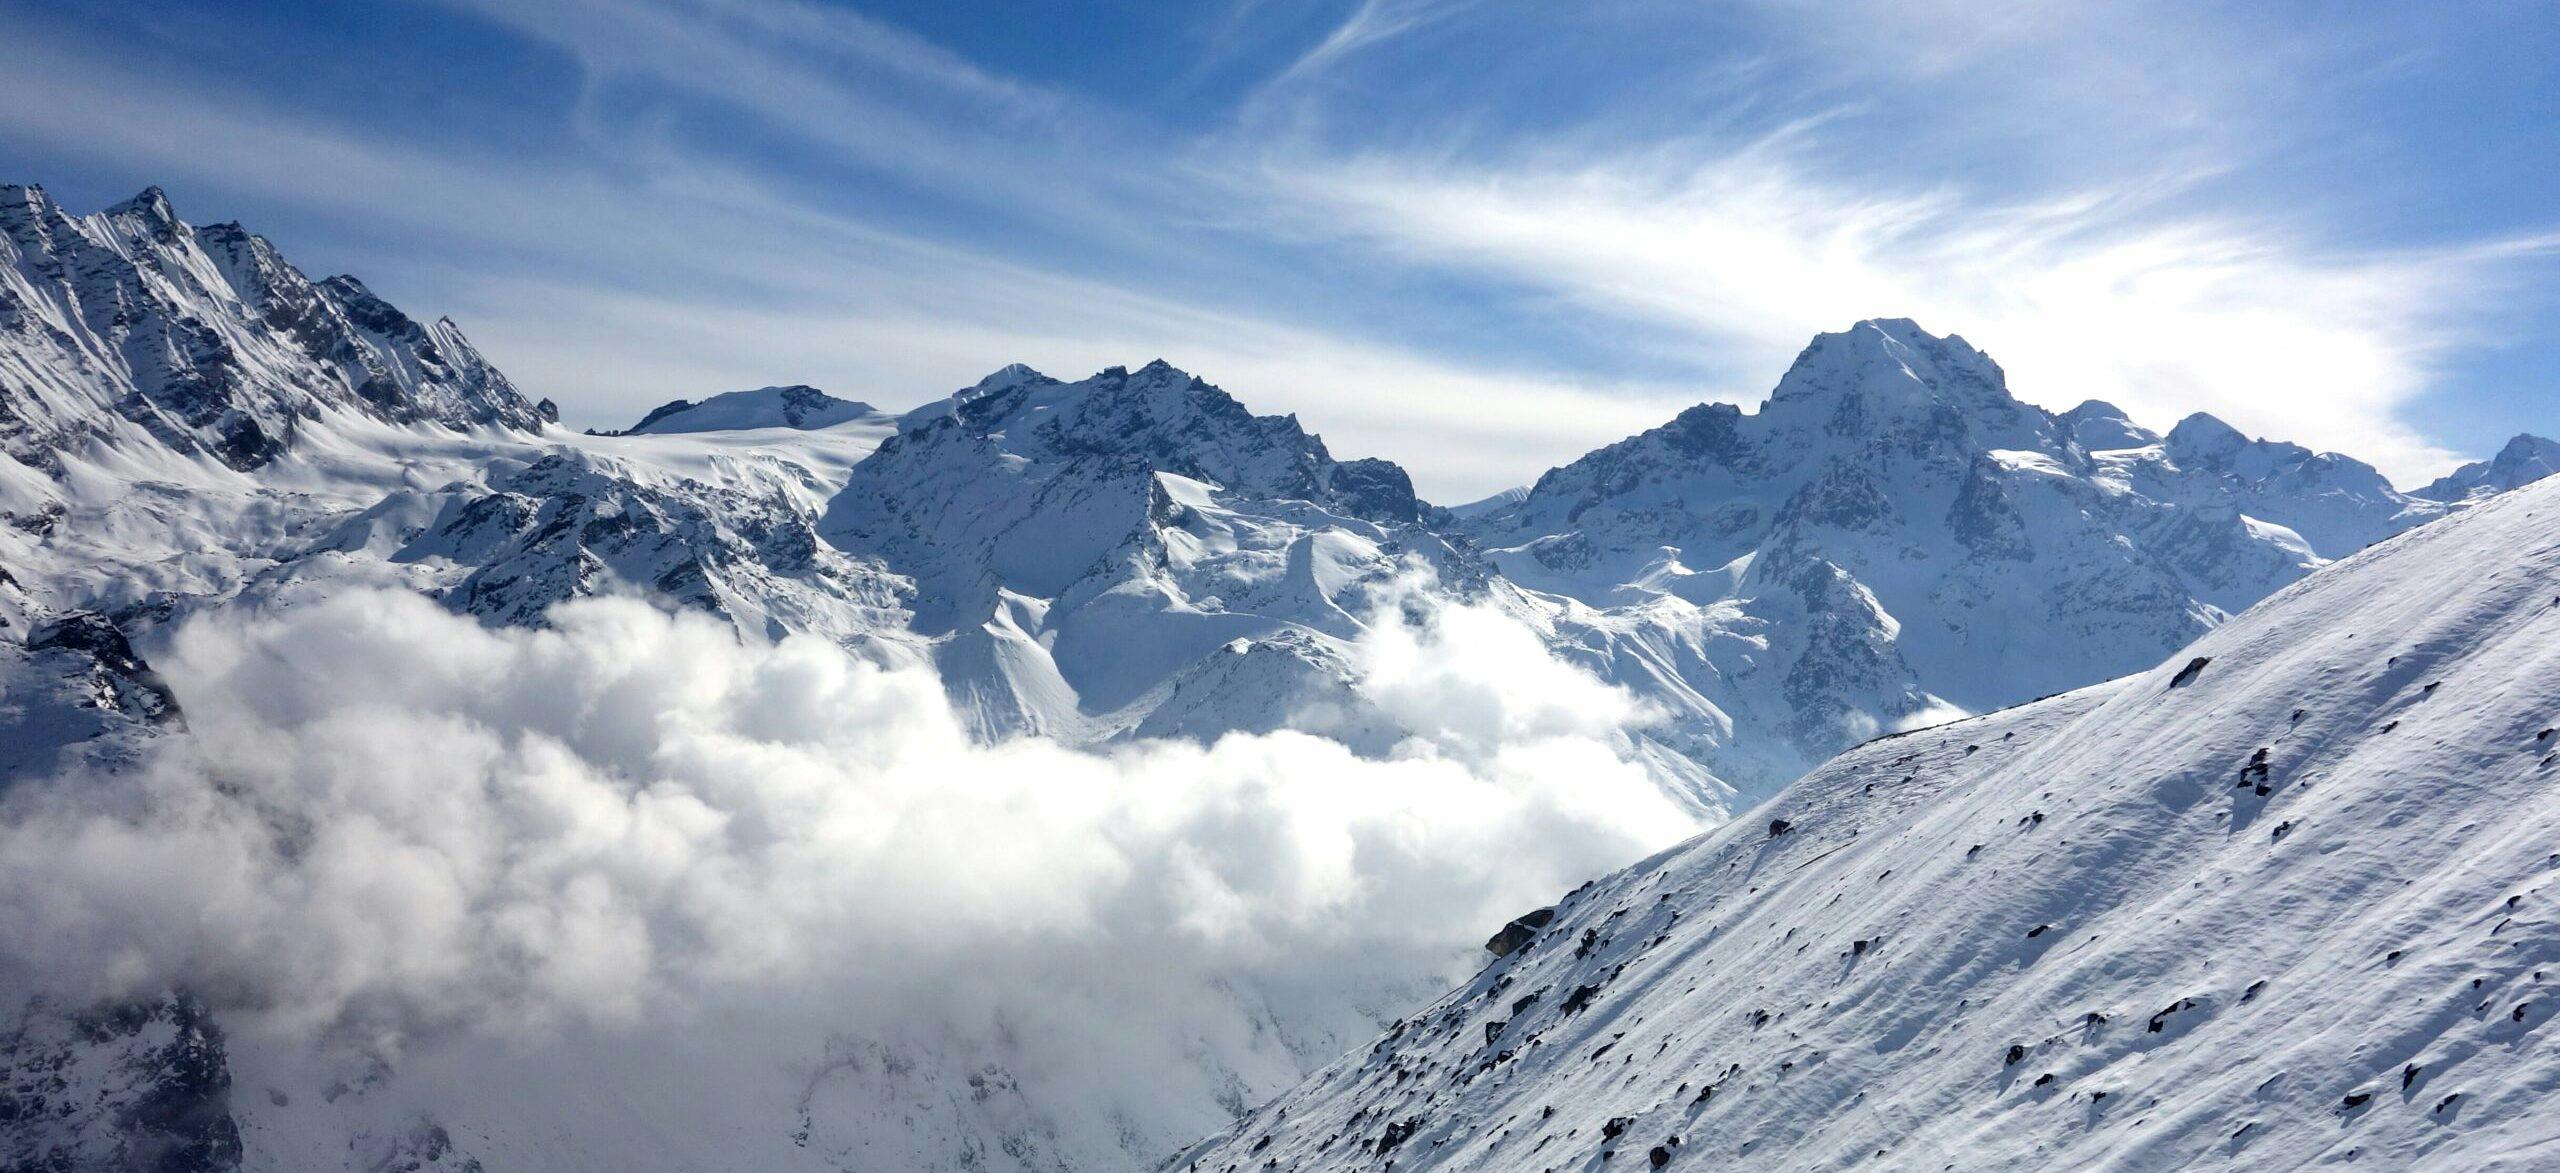 Yala Peak: An Ideal Introduction to Himalayan Climbing